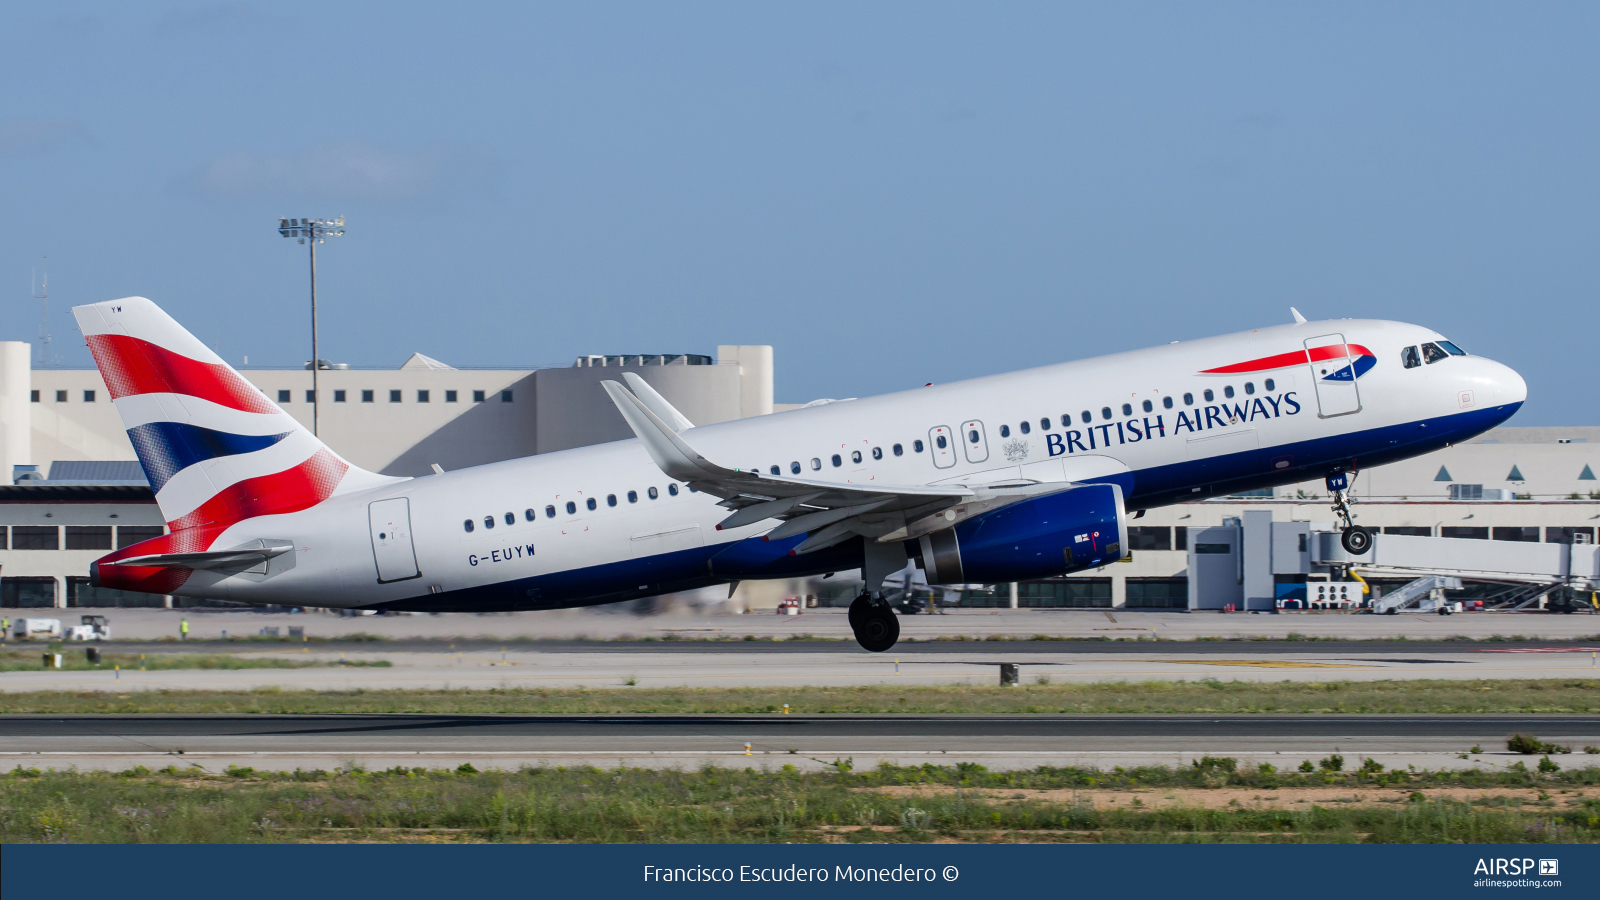 British Airways  Airbus A320  G-EUYW